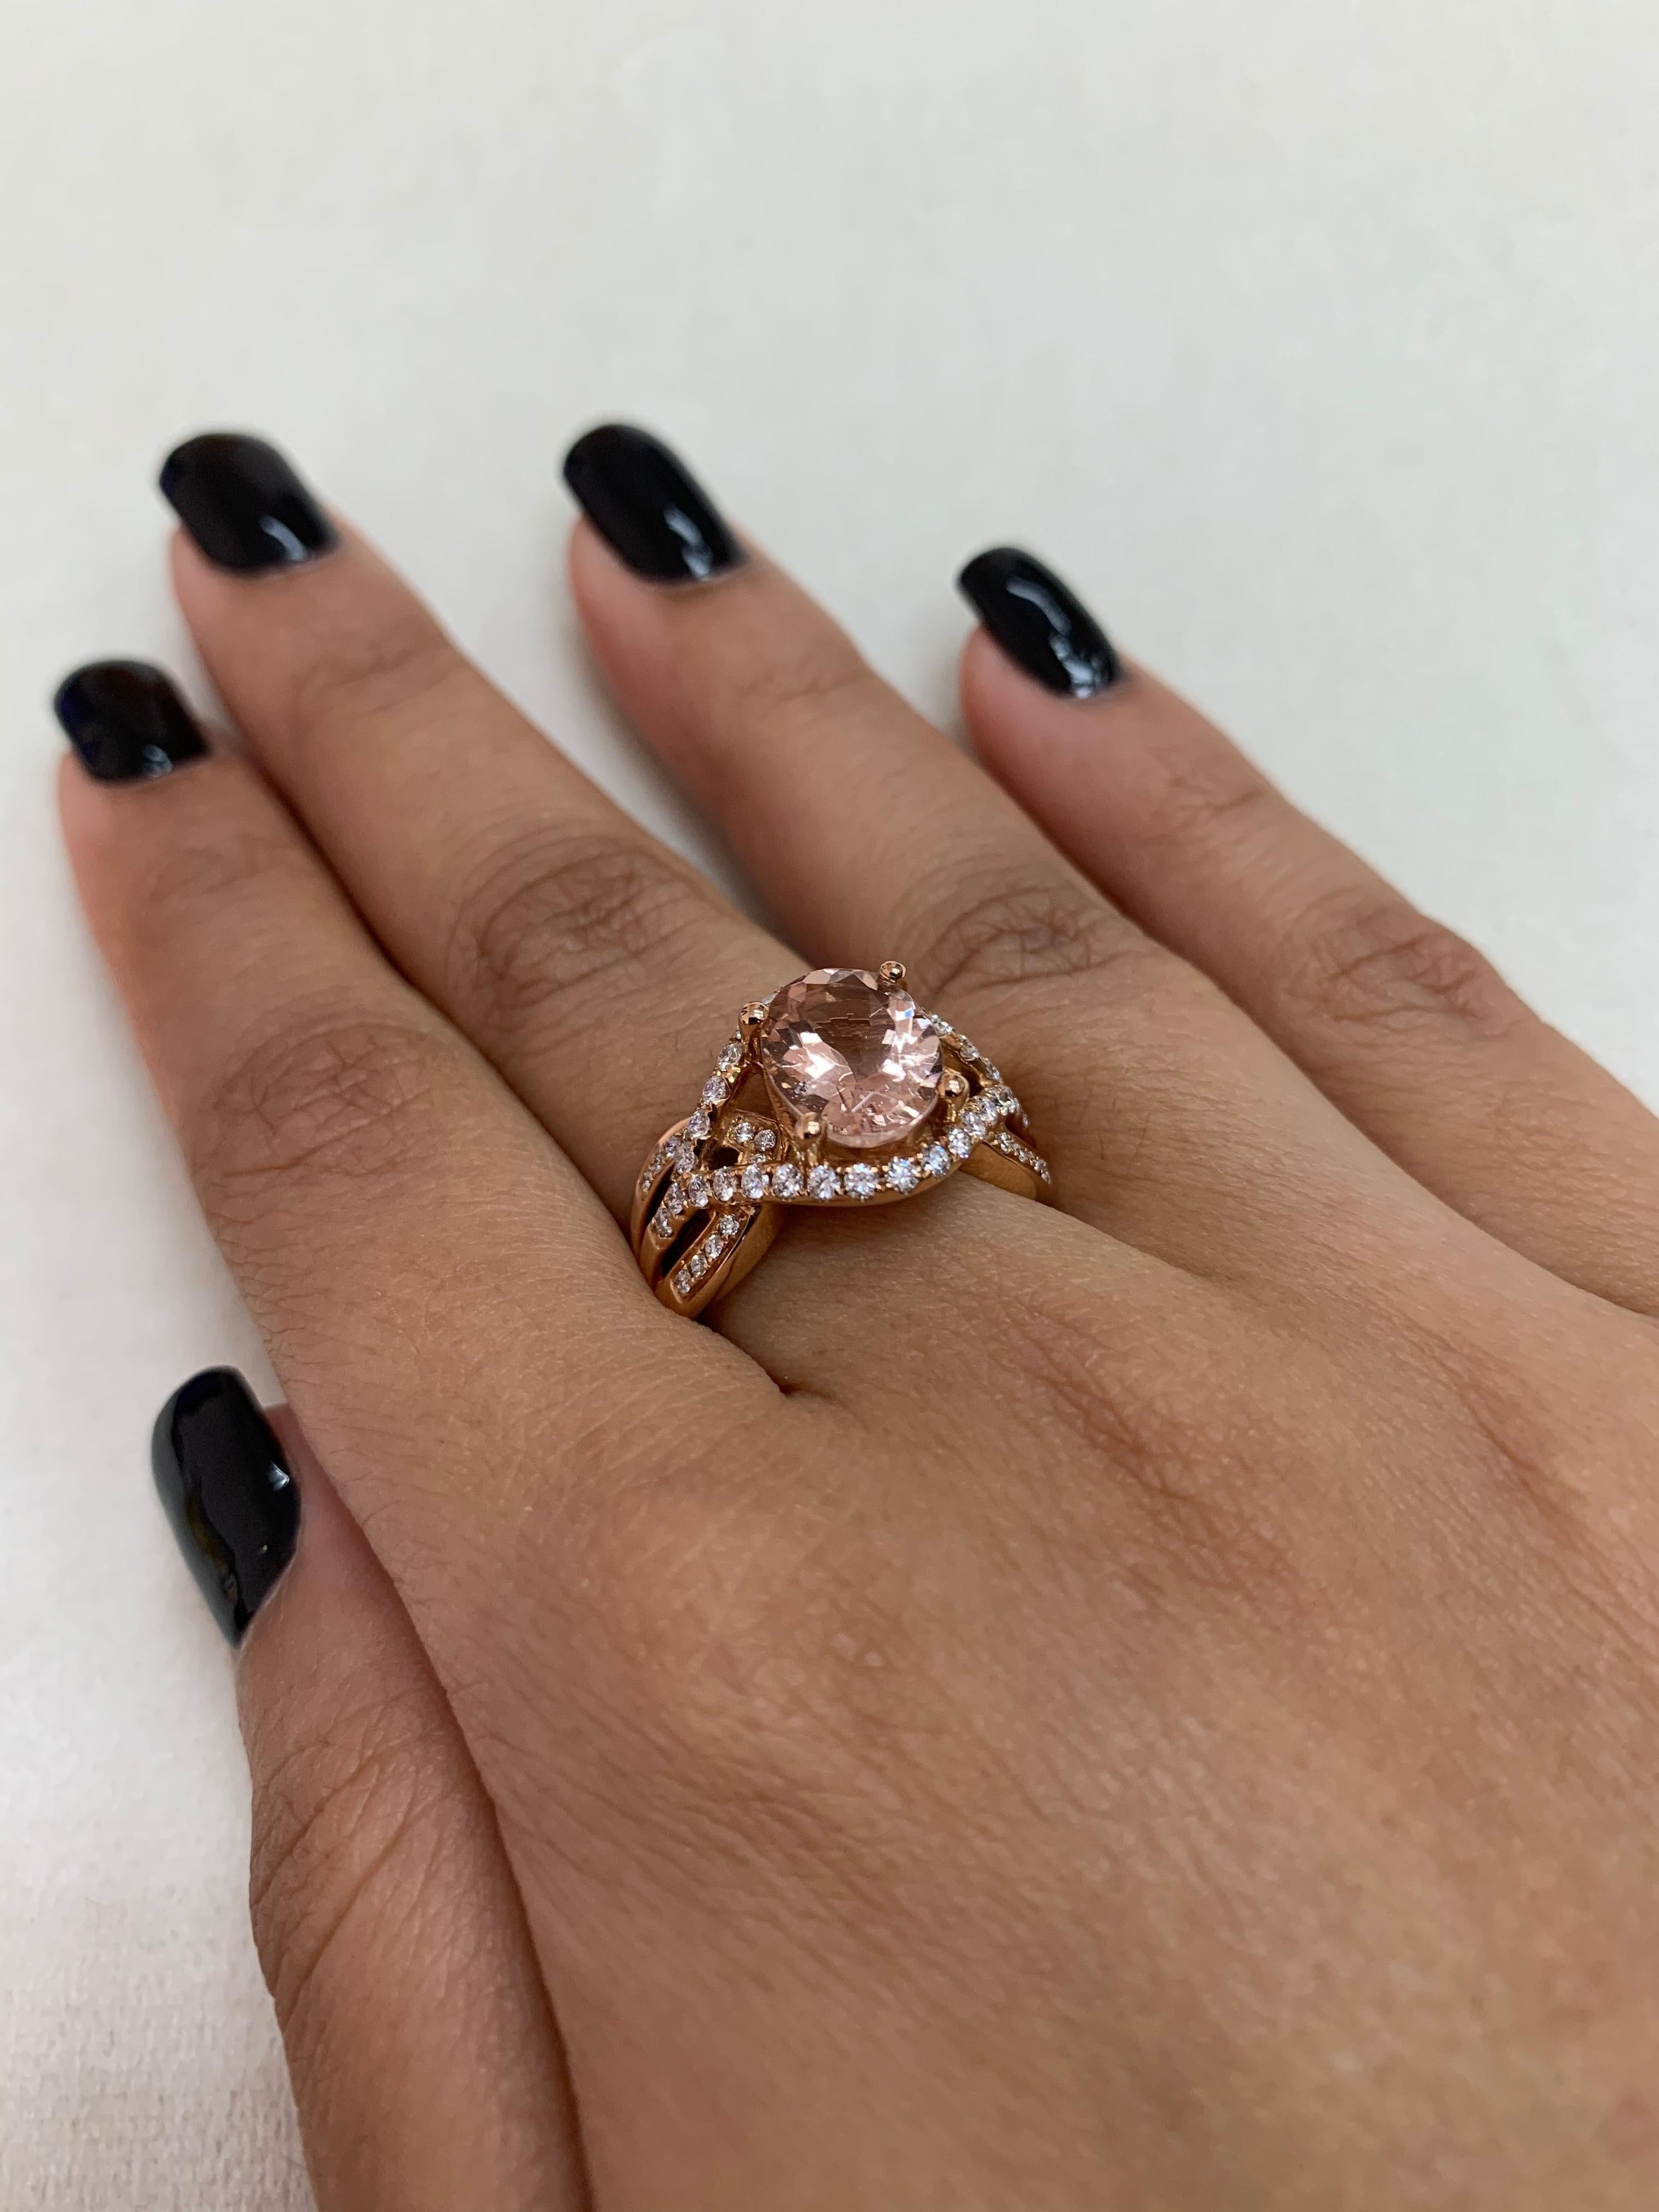 rose gold morganite engagement rings